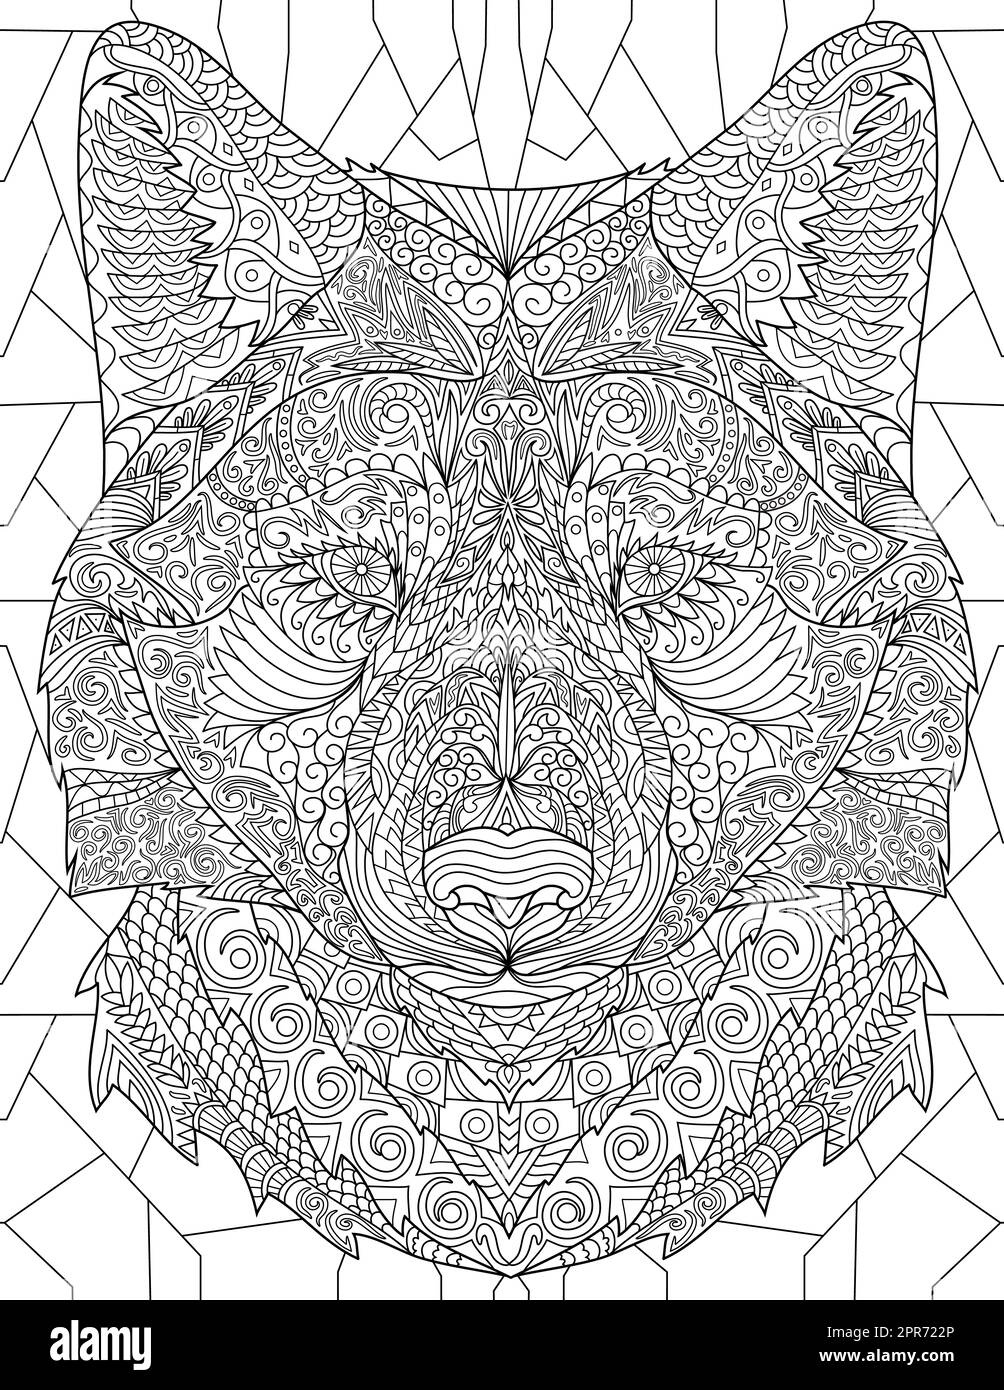 Page de livre de coloriage avec gros Loup effrayant tête de dessin regardant loin. Feuille à colorer avec grand visage de chien troublant dessin avec Afar sur un côté. Banque D'Images